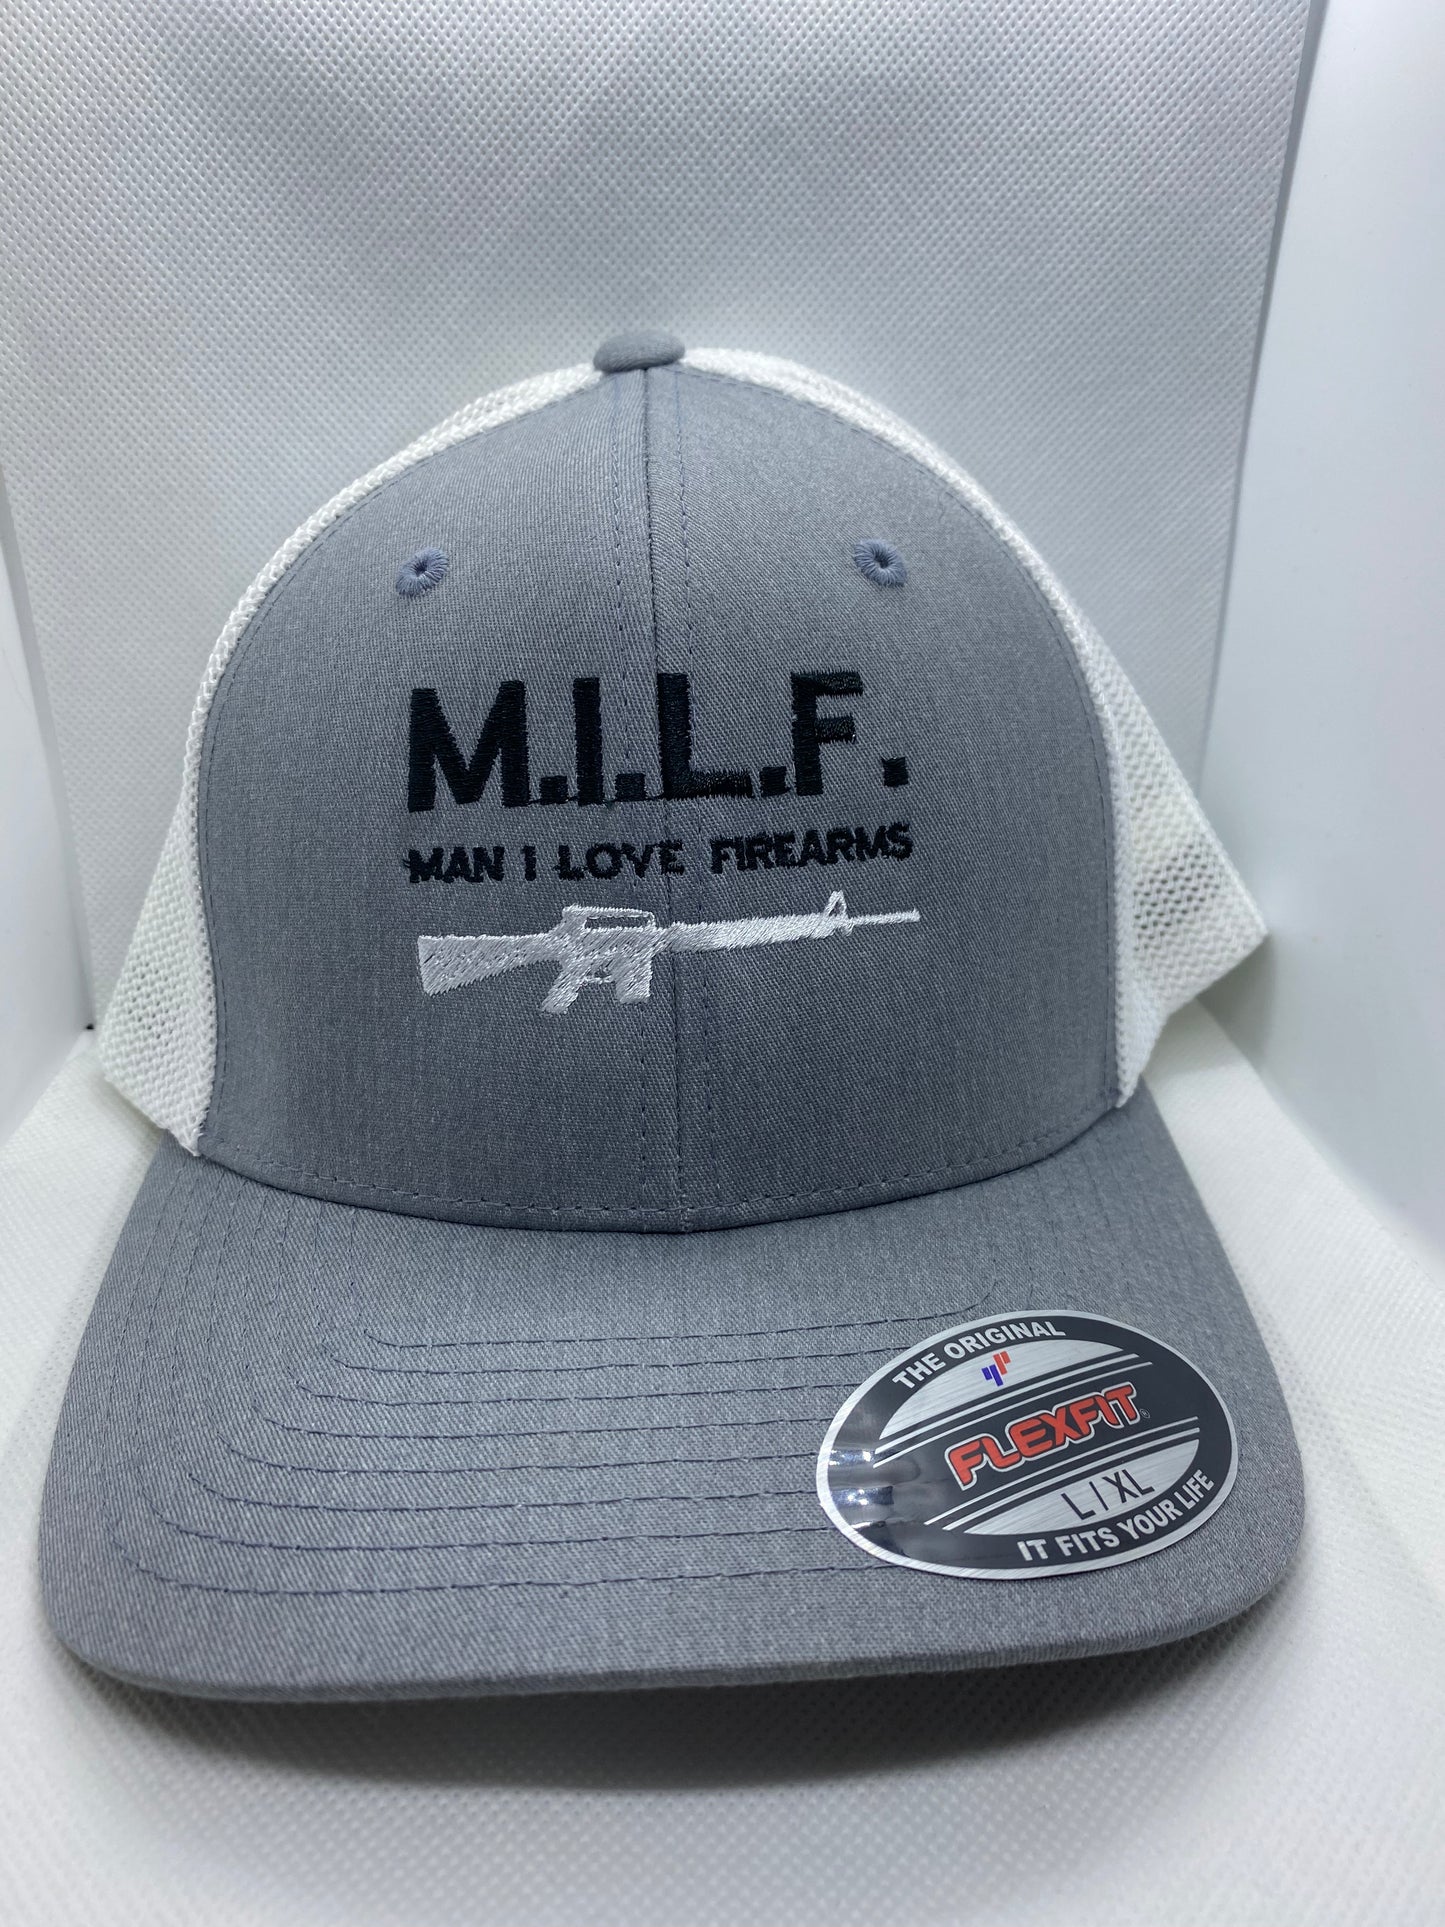 MILF “Man I Like Firearms” Flex Fit Trucker Style Hat